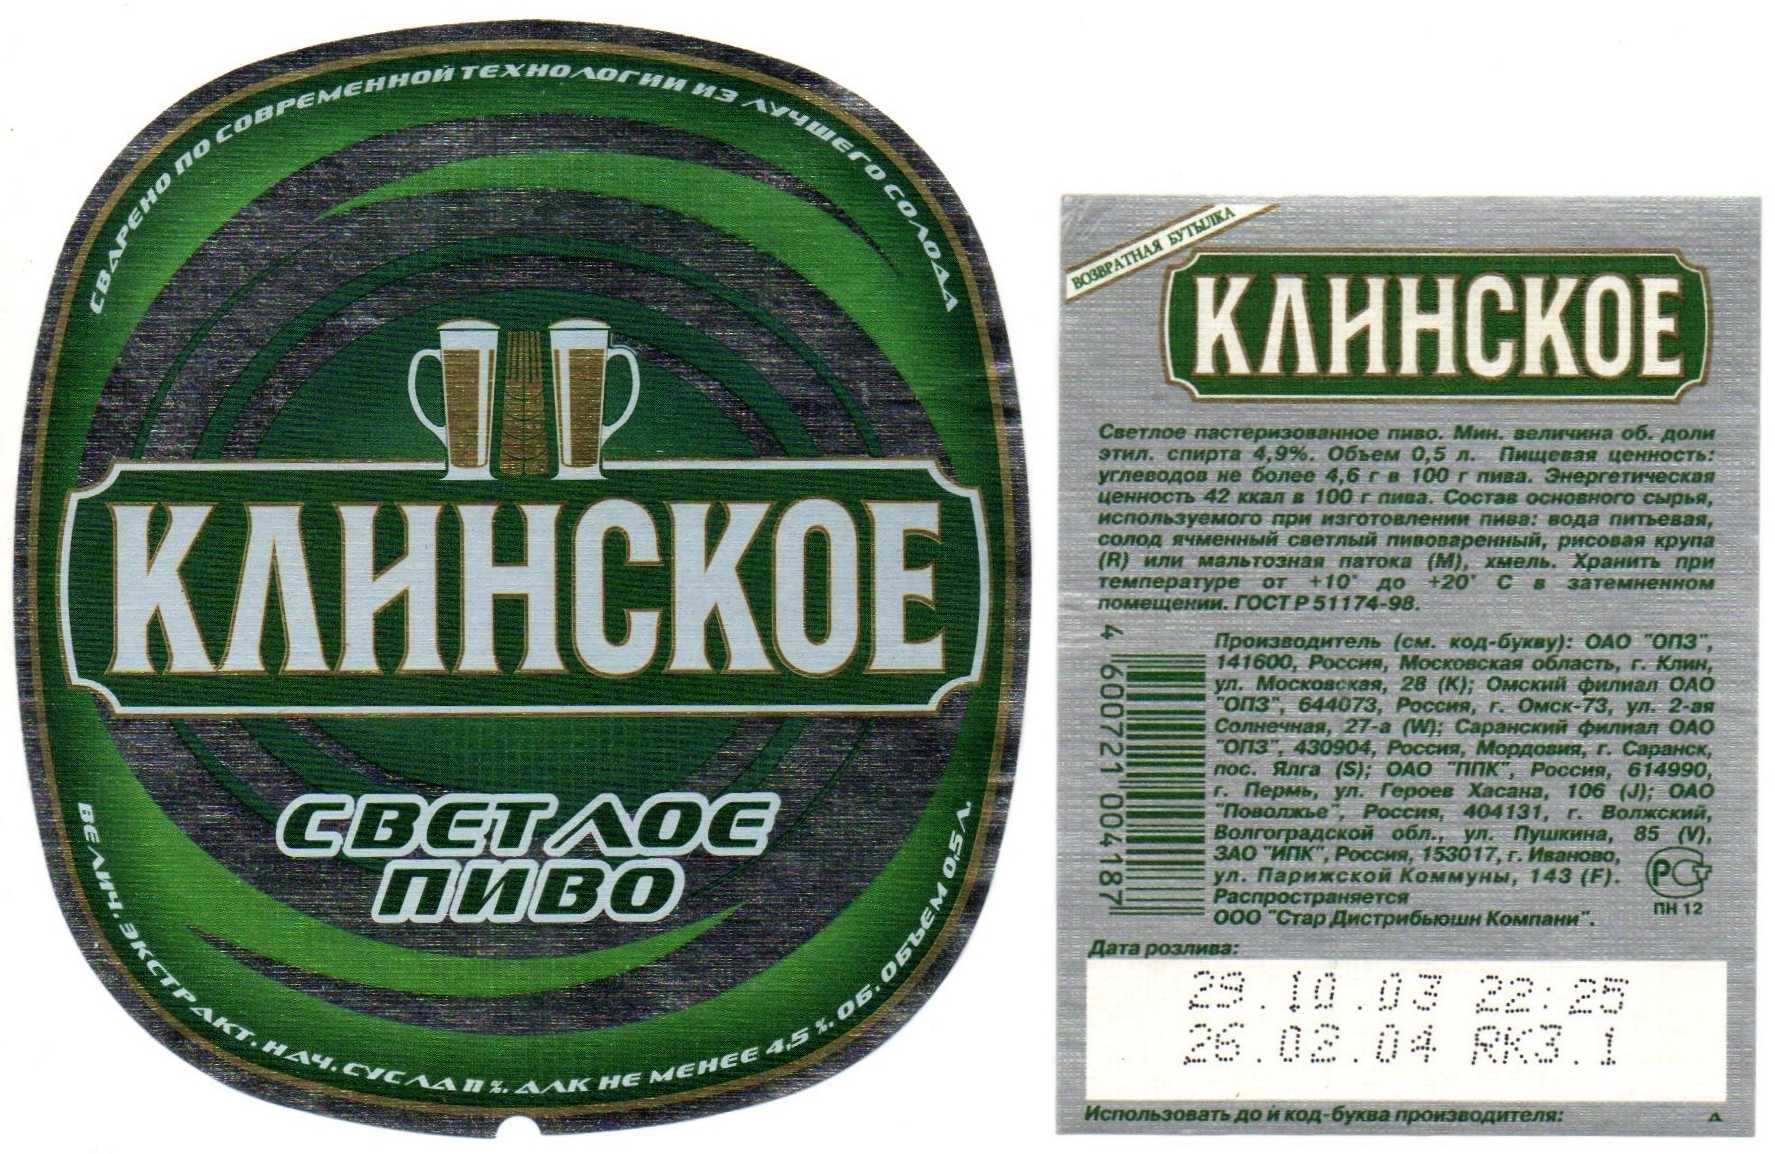 Пиво клинское (klinskoe) — особенности и разновидности напитка